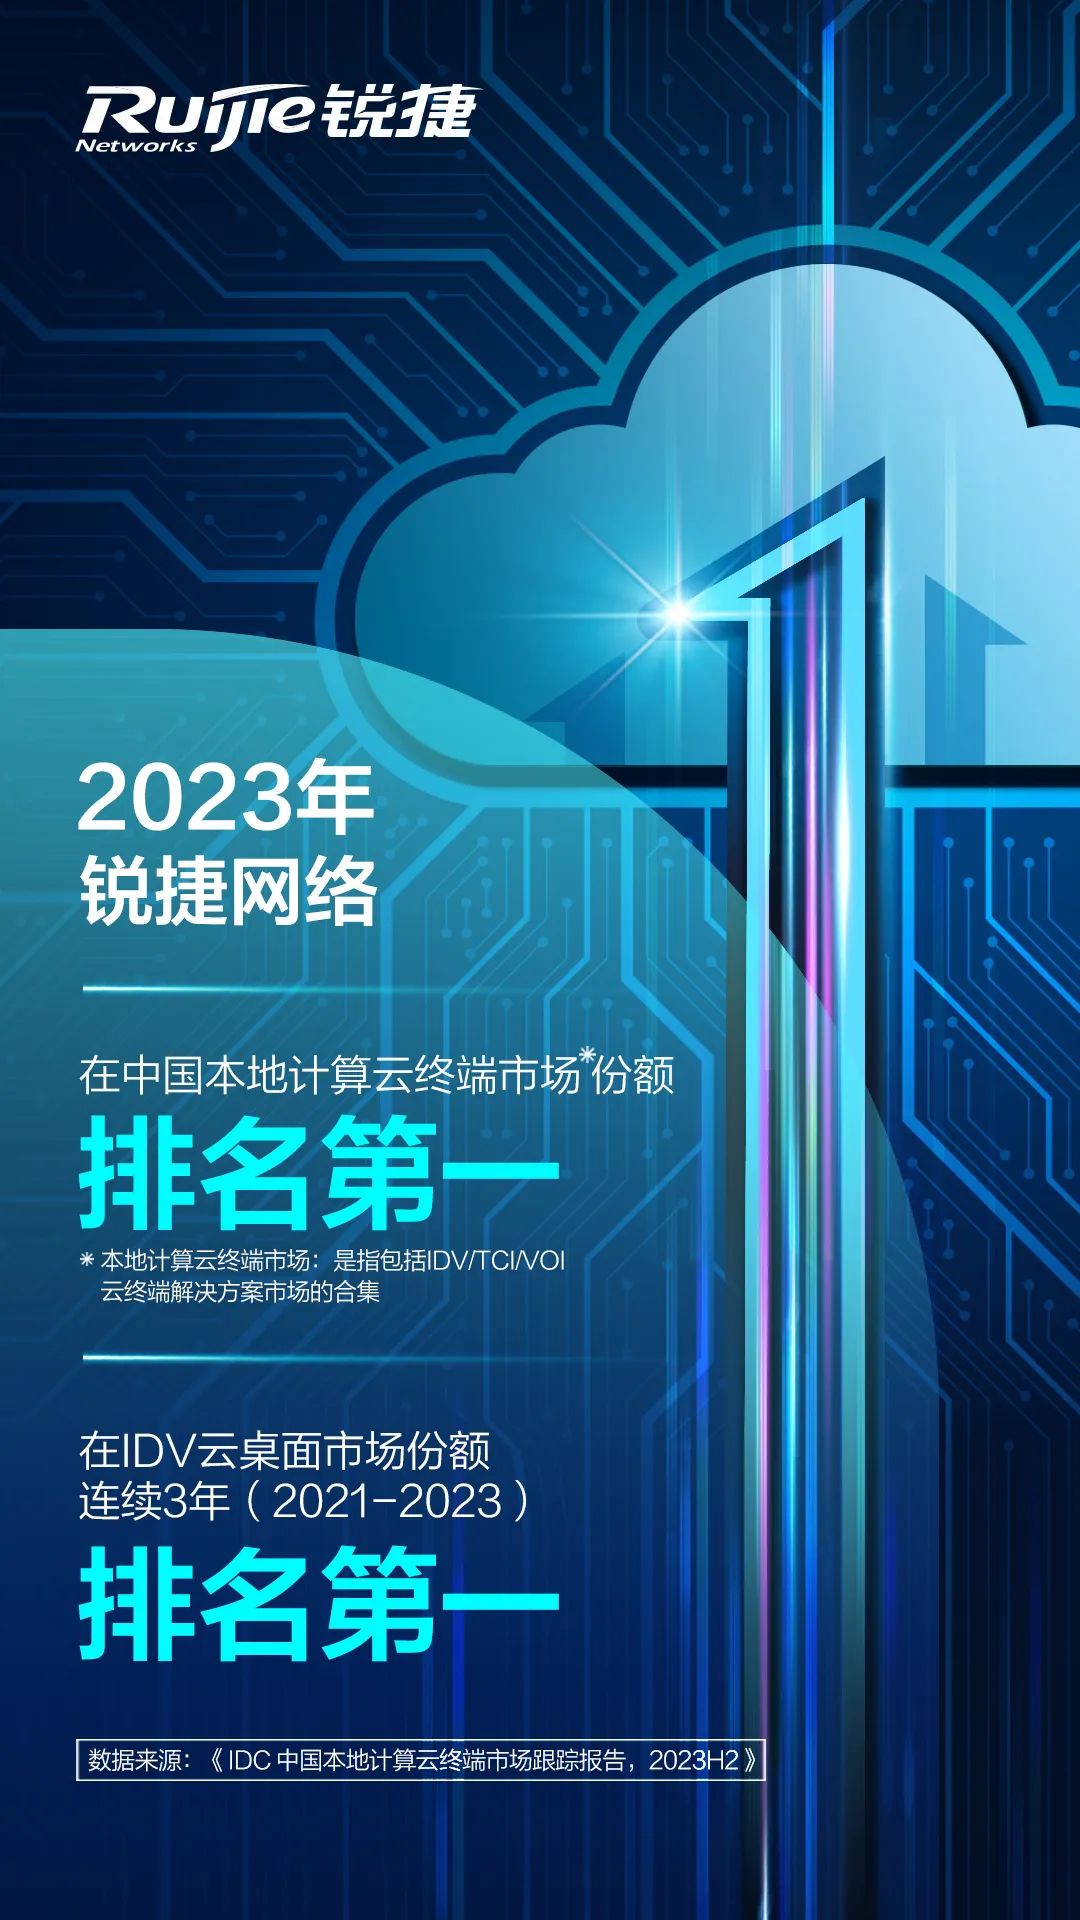 2023锐捷网络在本地计算云终端市场、IDV云桌面市场份额双第一